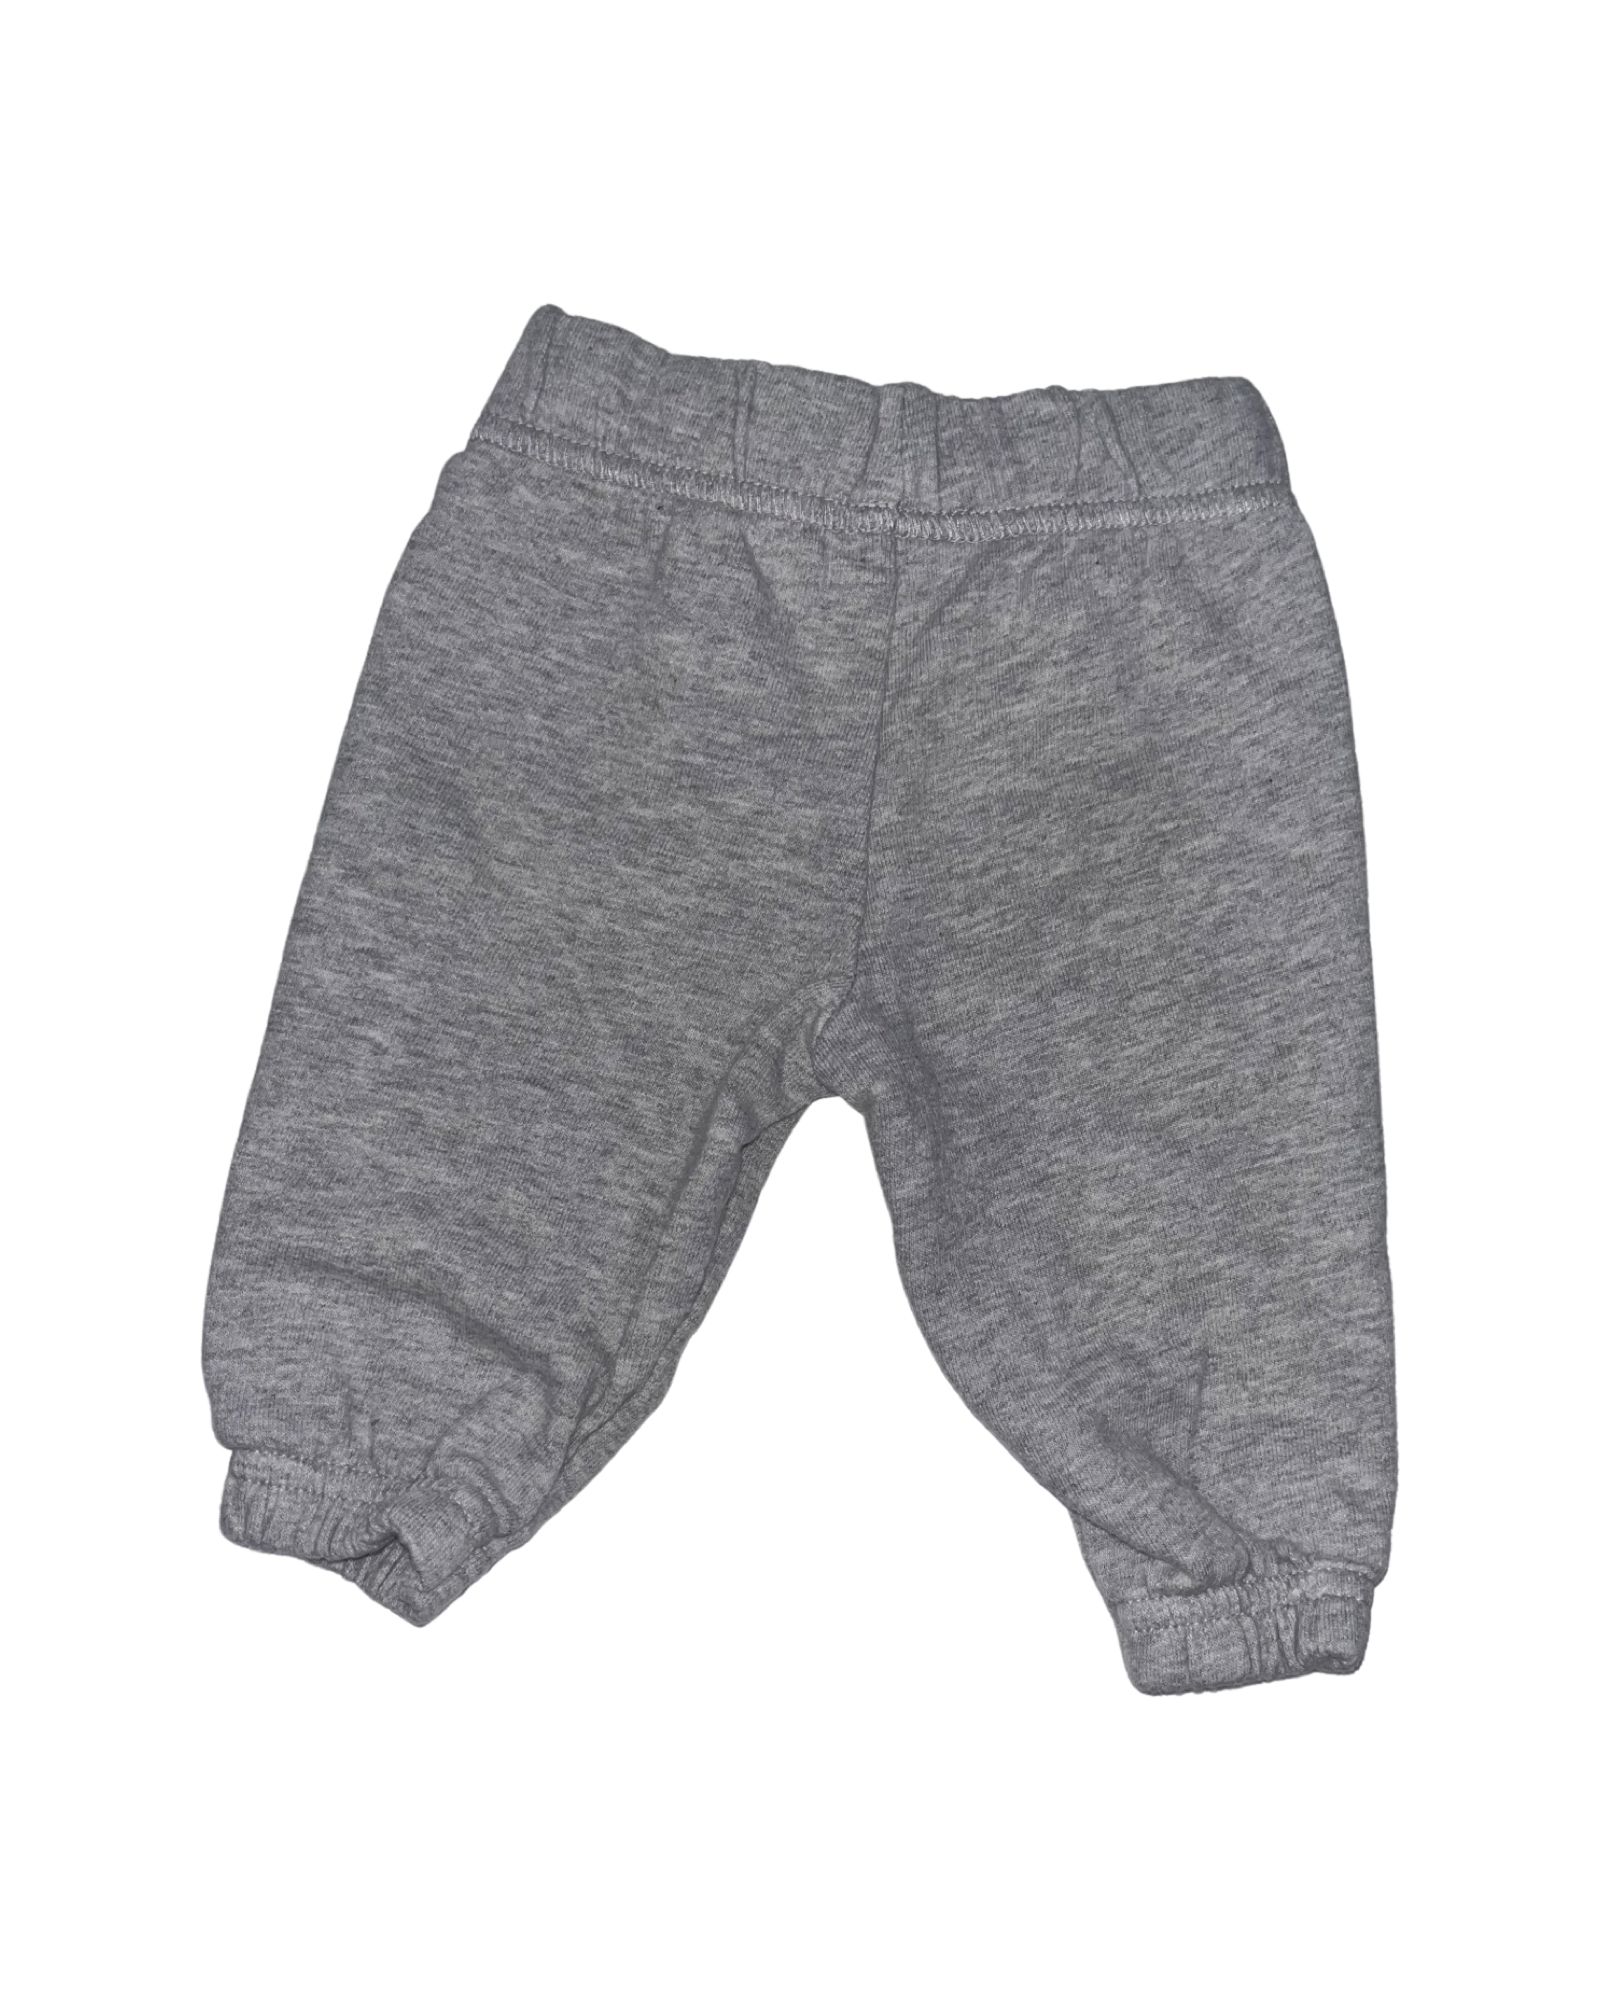 Carter's Grey Pants (0-3M)